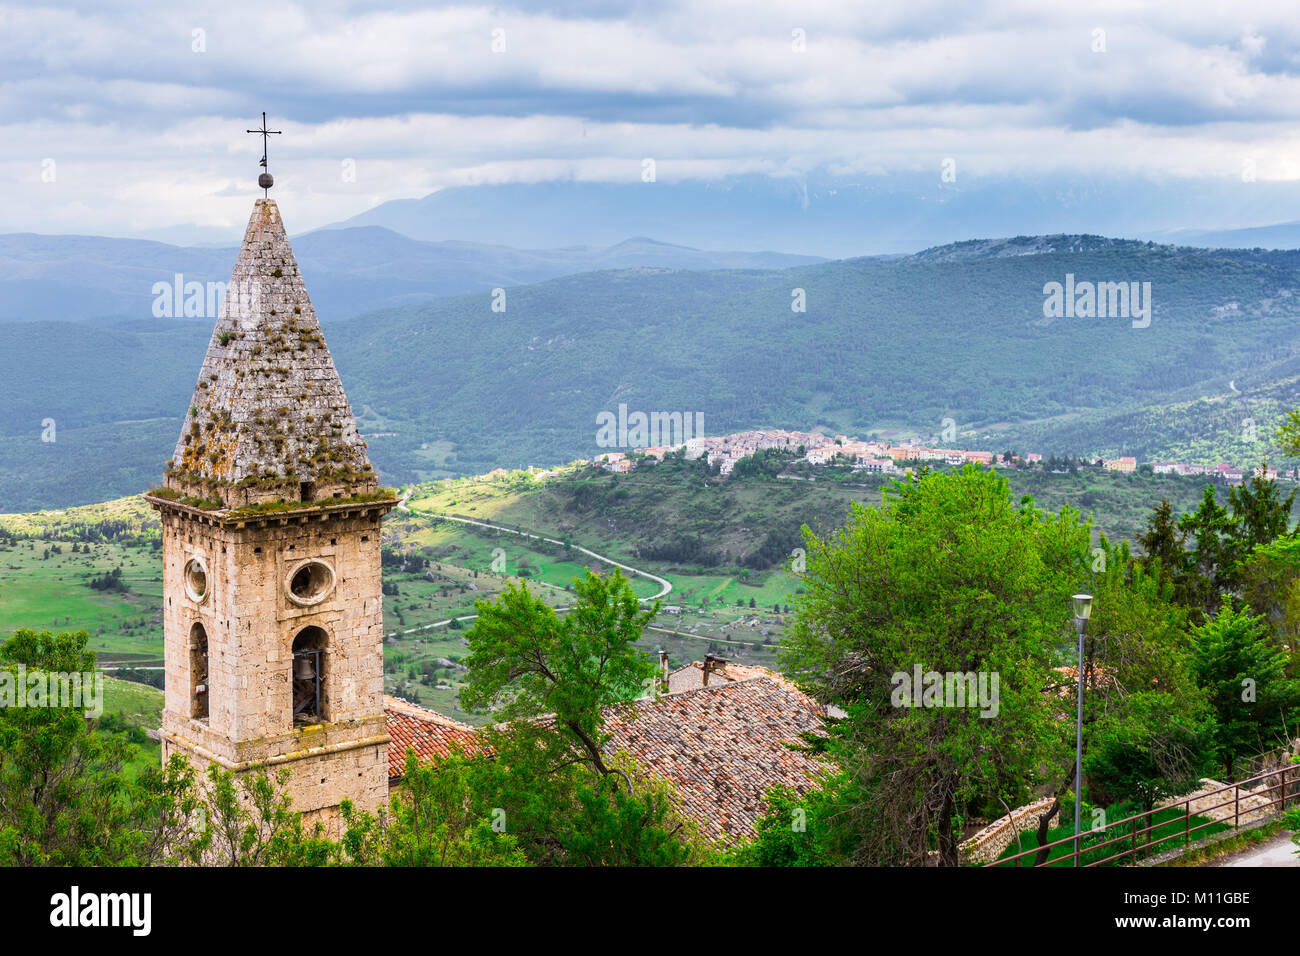 Beautifull view of the breathtaking landscape of Rocca Calascio, Abruzzo, Italy Stock Photo